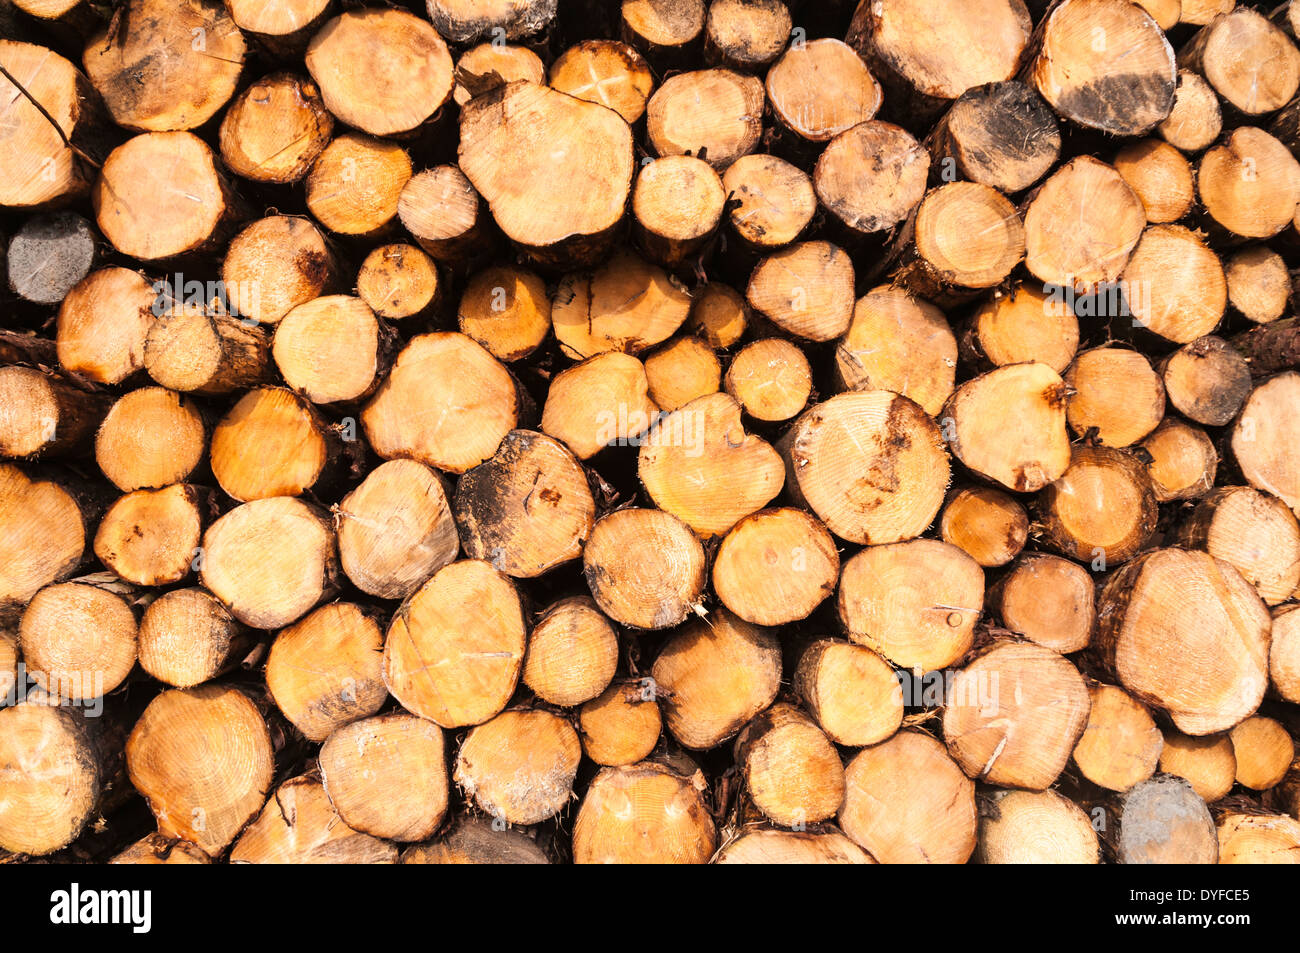 Freshly logged timber, piled up Stock Photo